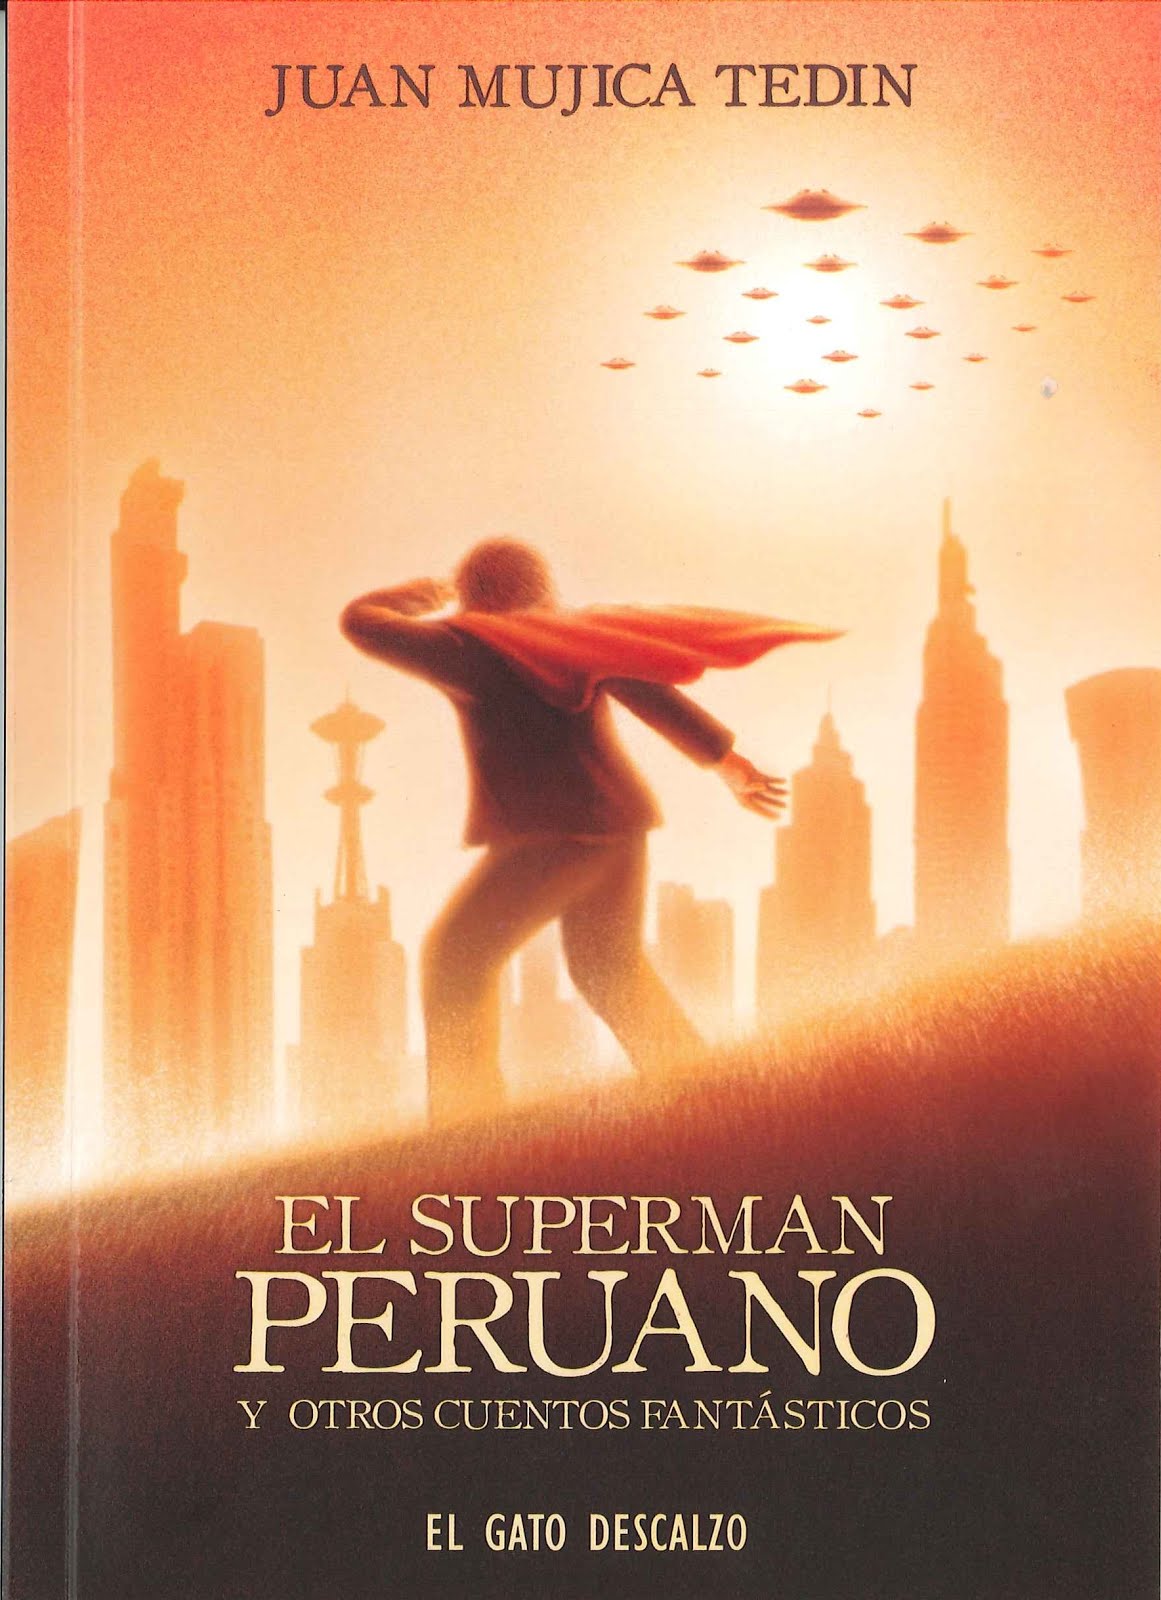 "El Superman peruano"